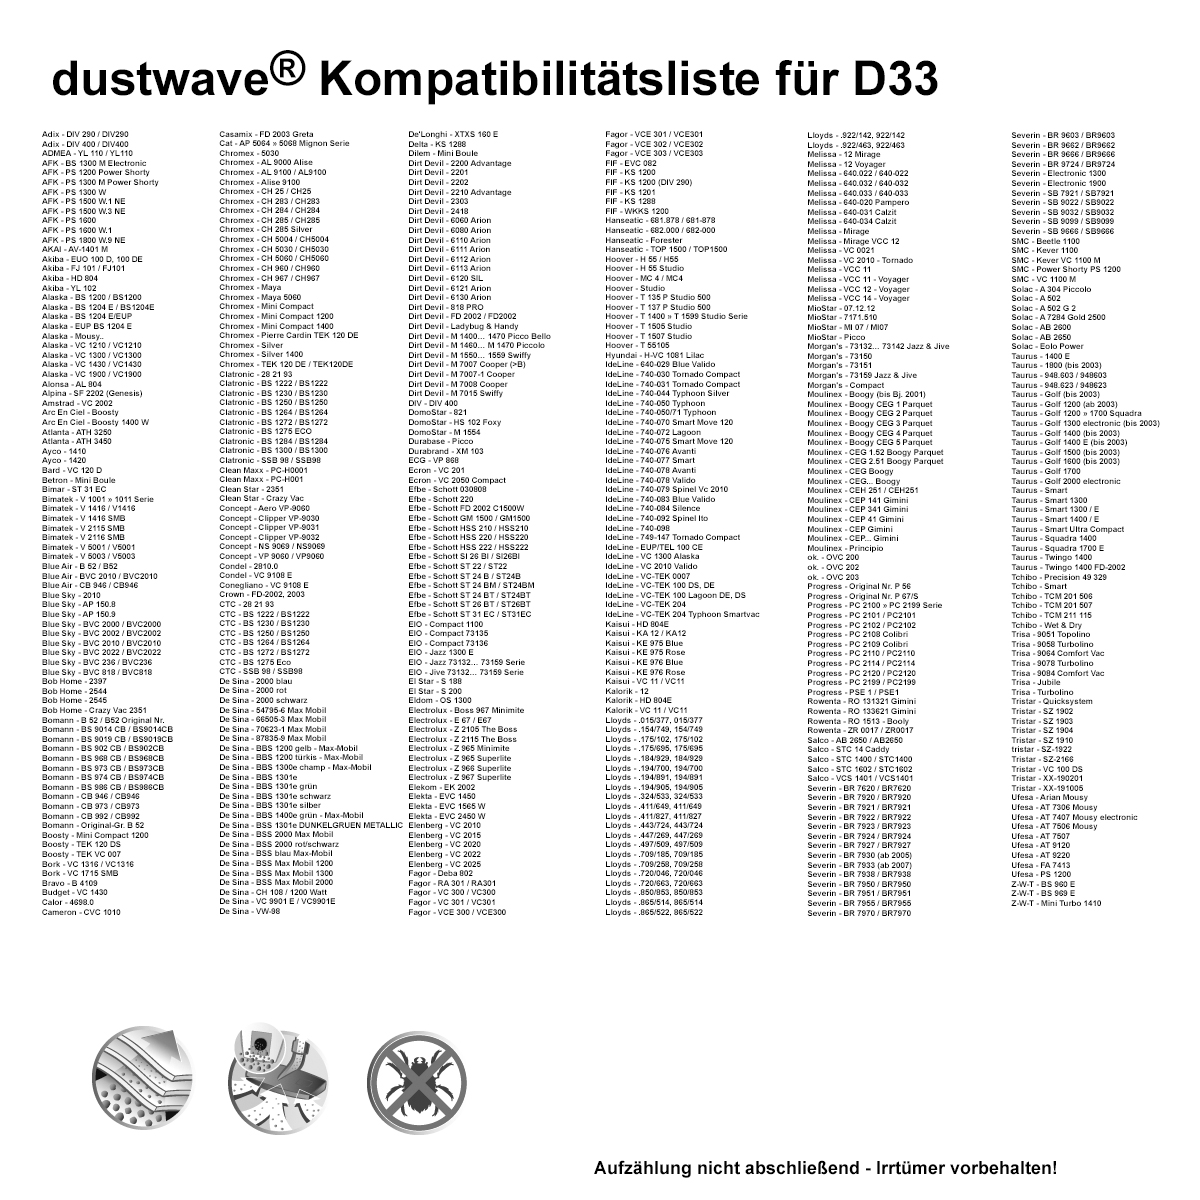 Dustwave® 20 Staubsaugerbeutel für Atlanta ATH 3450 - hocheffizient, mehrlagiges Mikrovlies mit Hygieneverschluss - Made in Germany